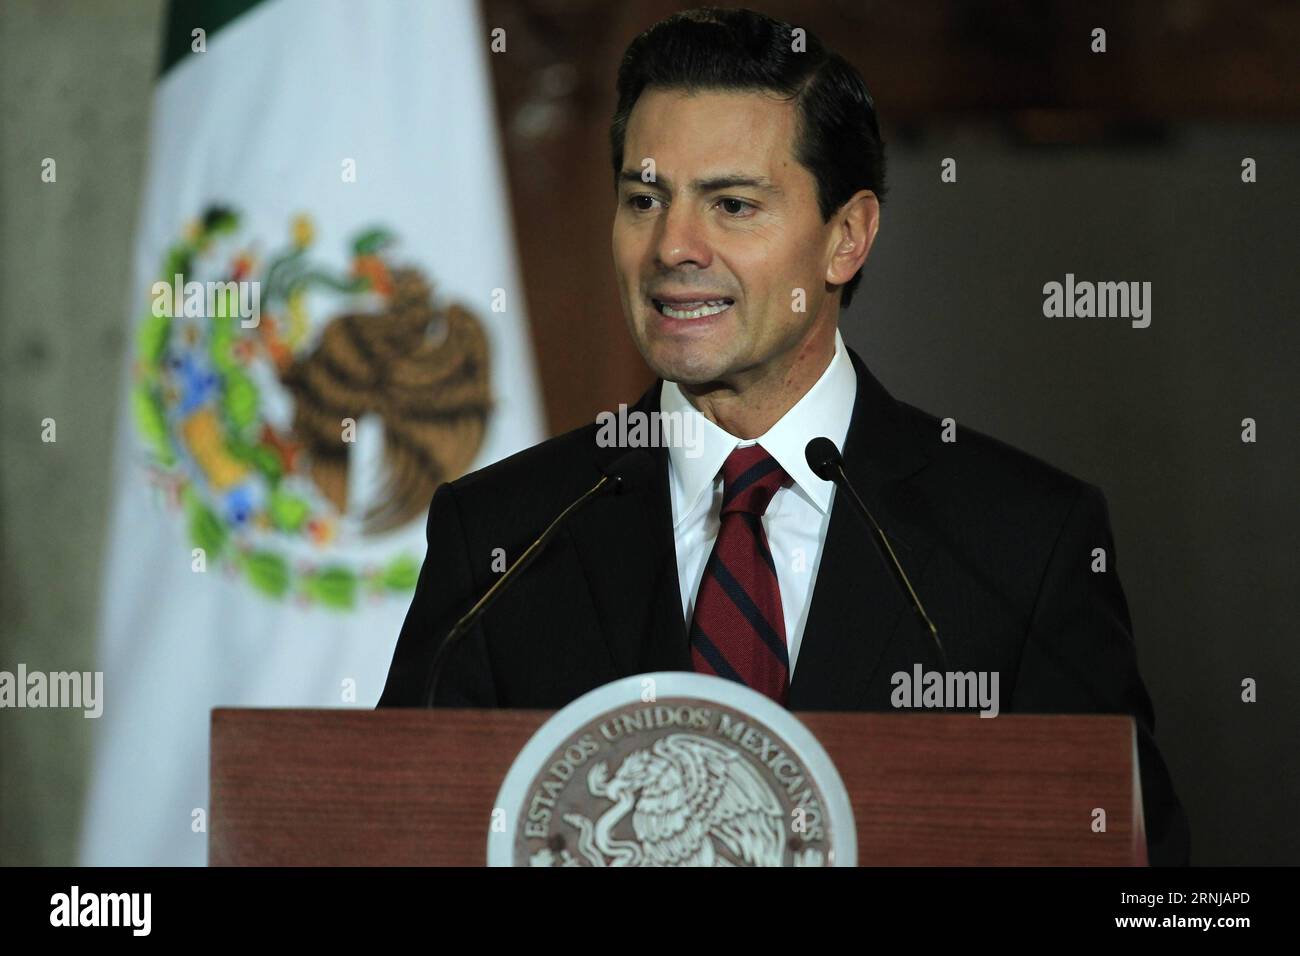 MEXICO, le 11 janvier 2017 -- le président mexicain Enrique Pena Nieto prend la parole lors d'une conférence à Mexico, Mexique, le 11 janvier 2017. Mercredi, le président élu américain Donald Trump a de nouveau exaspéré les Mexicains en réitérant son engagement à construire un mur le long de la frontière et à faire payer la facture au Mexique. Le président mexicain Enrique Pena Nieto a rejeté la demande de Trump, affirmant que le Mexique ne paierait pas pour le mur mais chercherait des négociations ouvertes et complètes avec le gouvernement Trump. (hy) MEXICO-MEXICO CITY-TRUMP-WALL str PUBLICATIONxNOTxINxCHN Mexico City Jan 11 2017 Président MEXICAIN Enrique Pena Nieto Banque D'Images